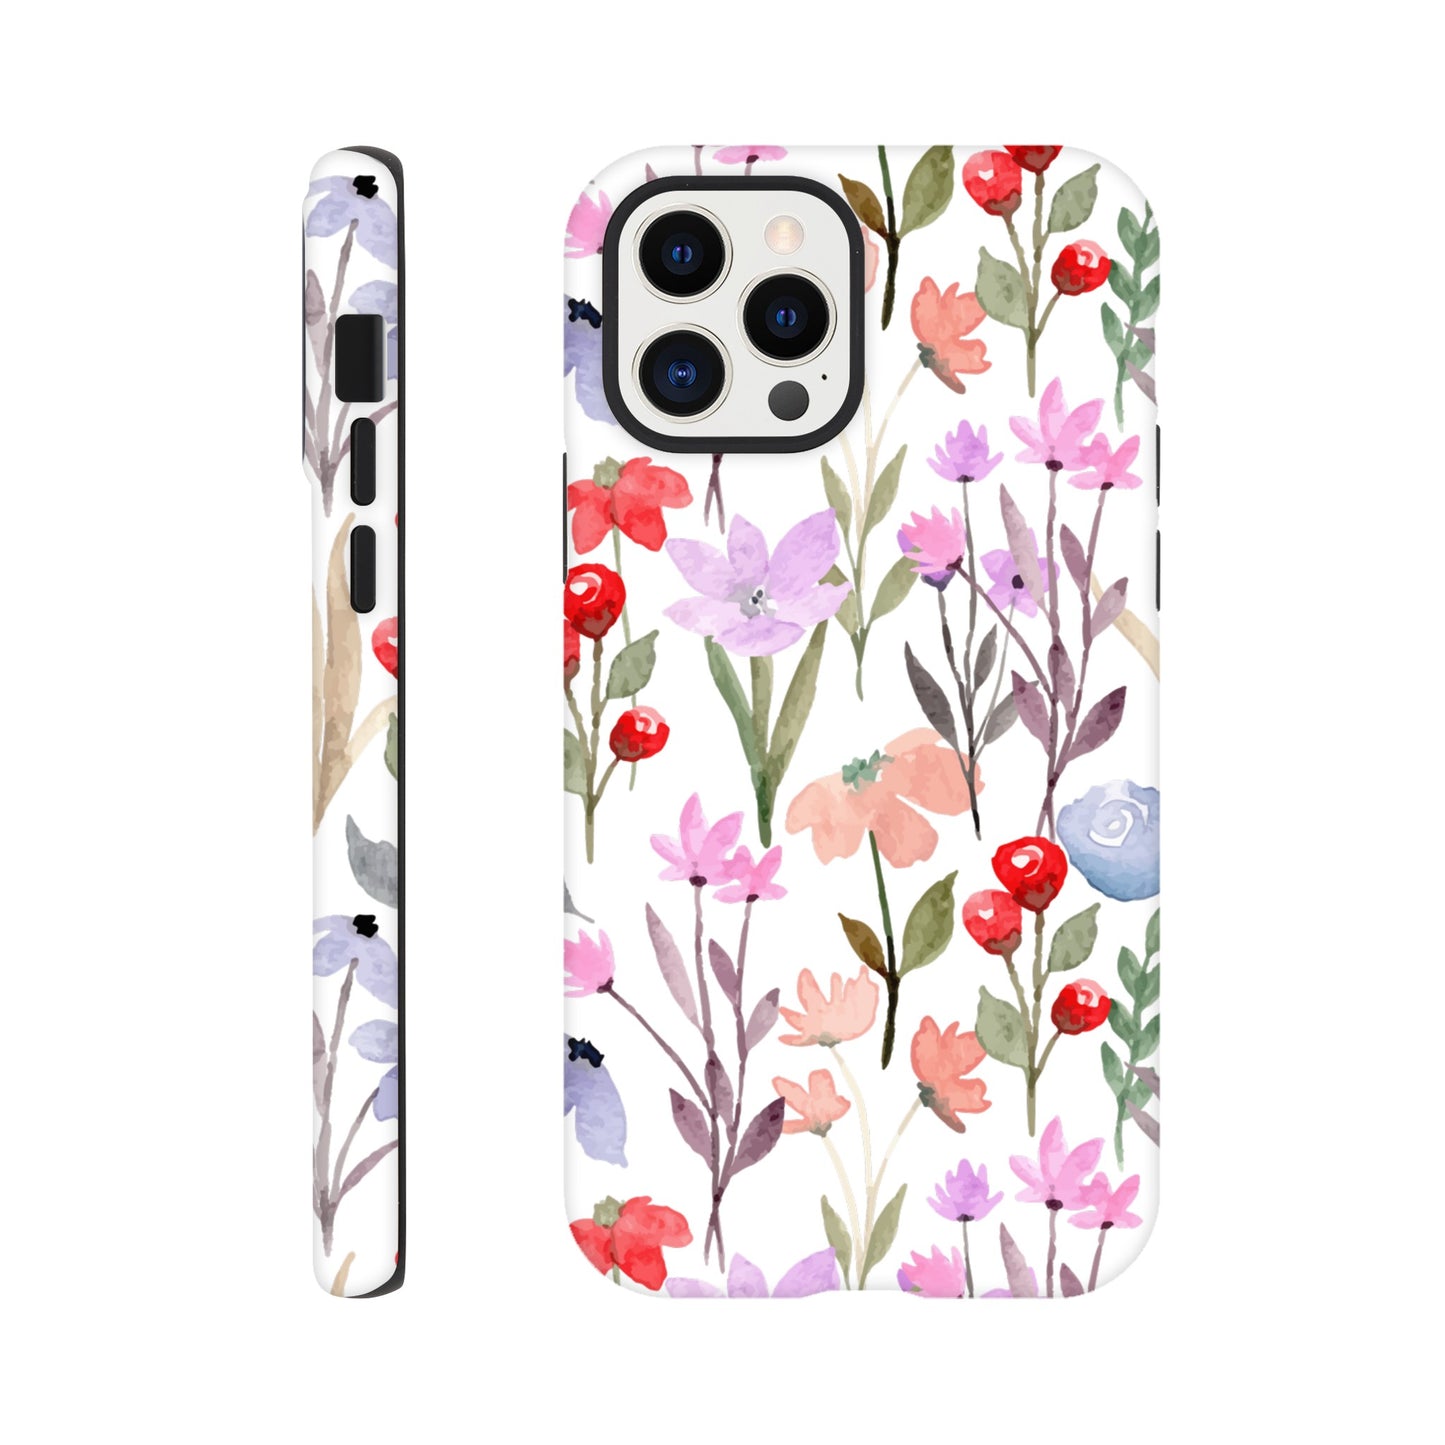 Watercolour Flowers - Phone Tough Case iPhone 12 Pro Phone Case Plants